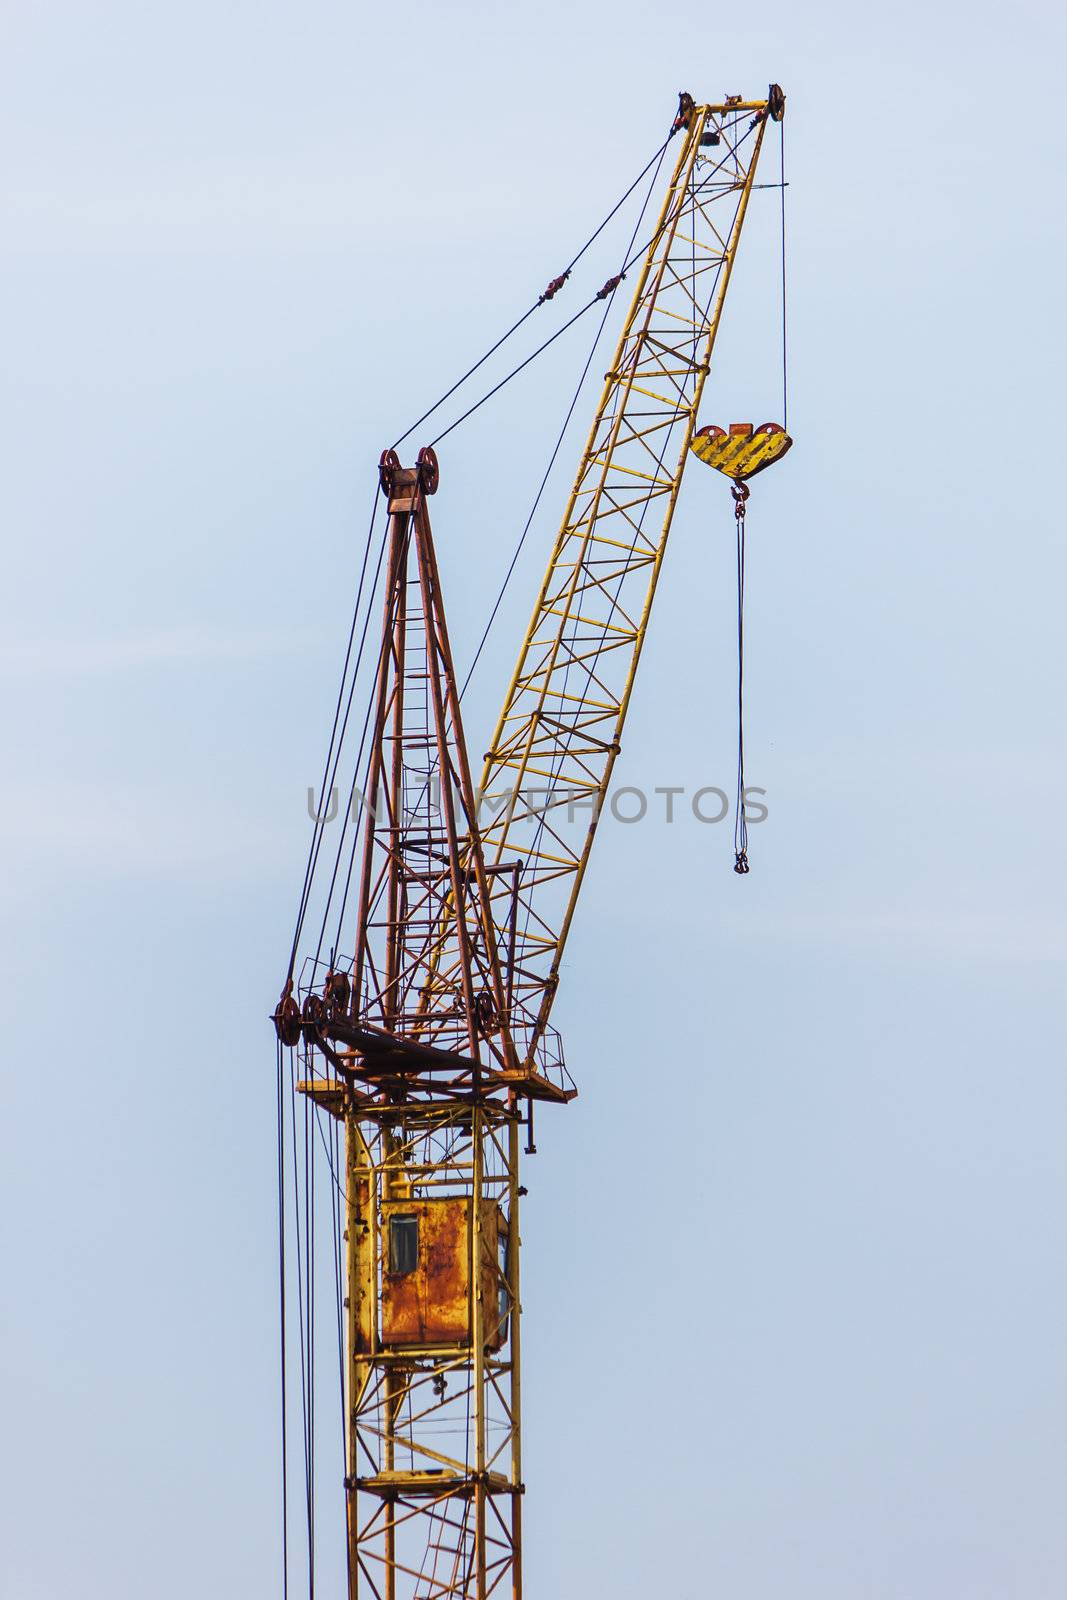 Building hoisting crane by oleg_zhukov